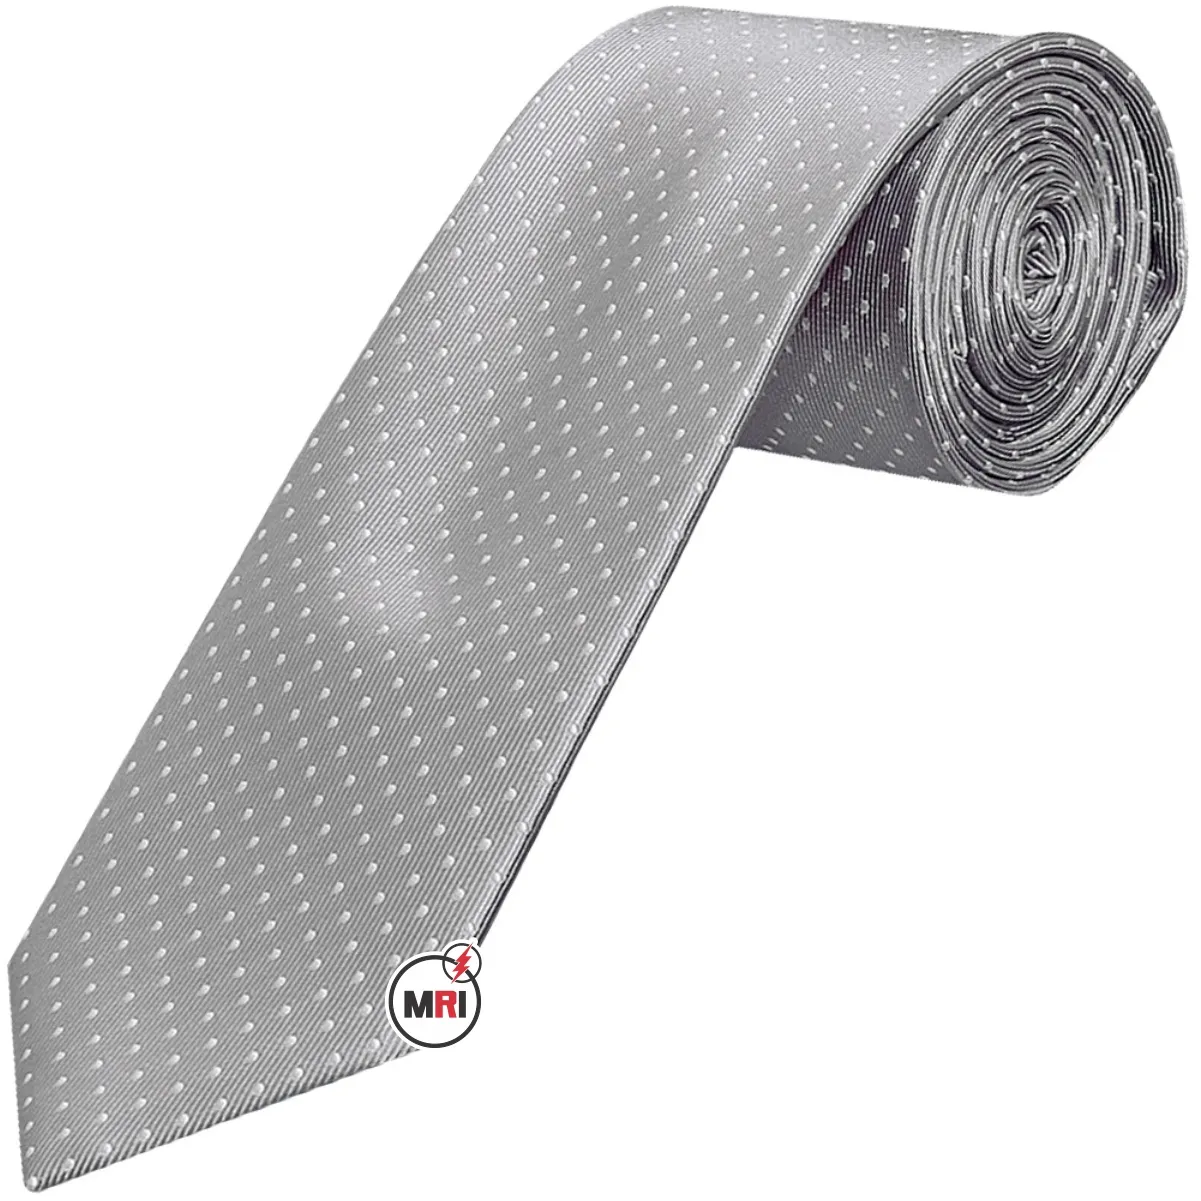 Herren Krawatte Krawatte Mikro faser Plaid Krawatte Mode Streifen Jacquard Krawatten für Männer Party Mann Geschenk Hochzeits kleid Accessoires